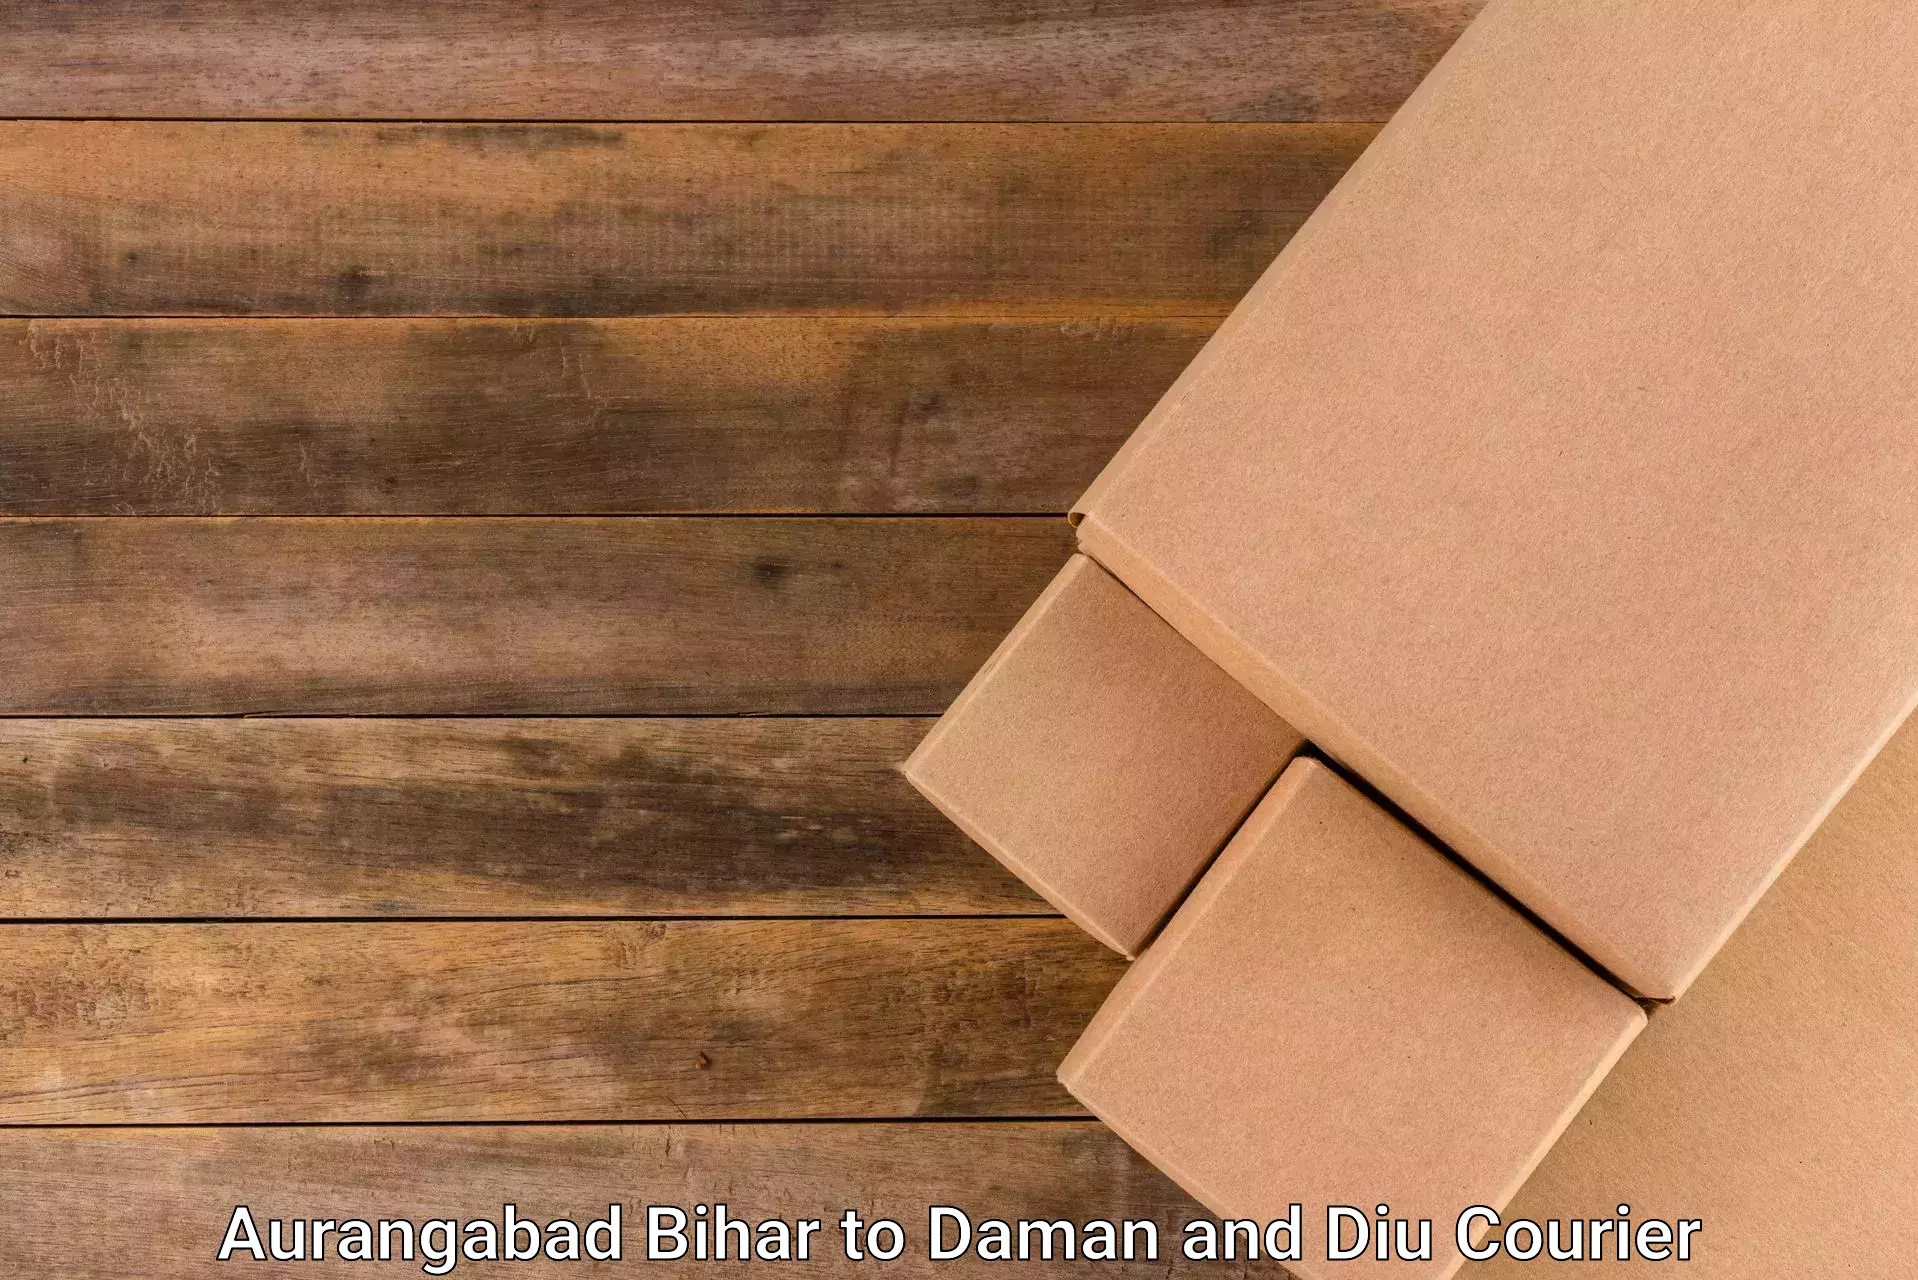 Reliable freight solutions Aurangabad Bihar to Daman and Diu